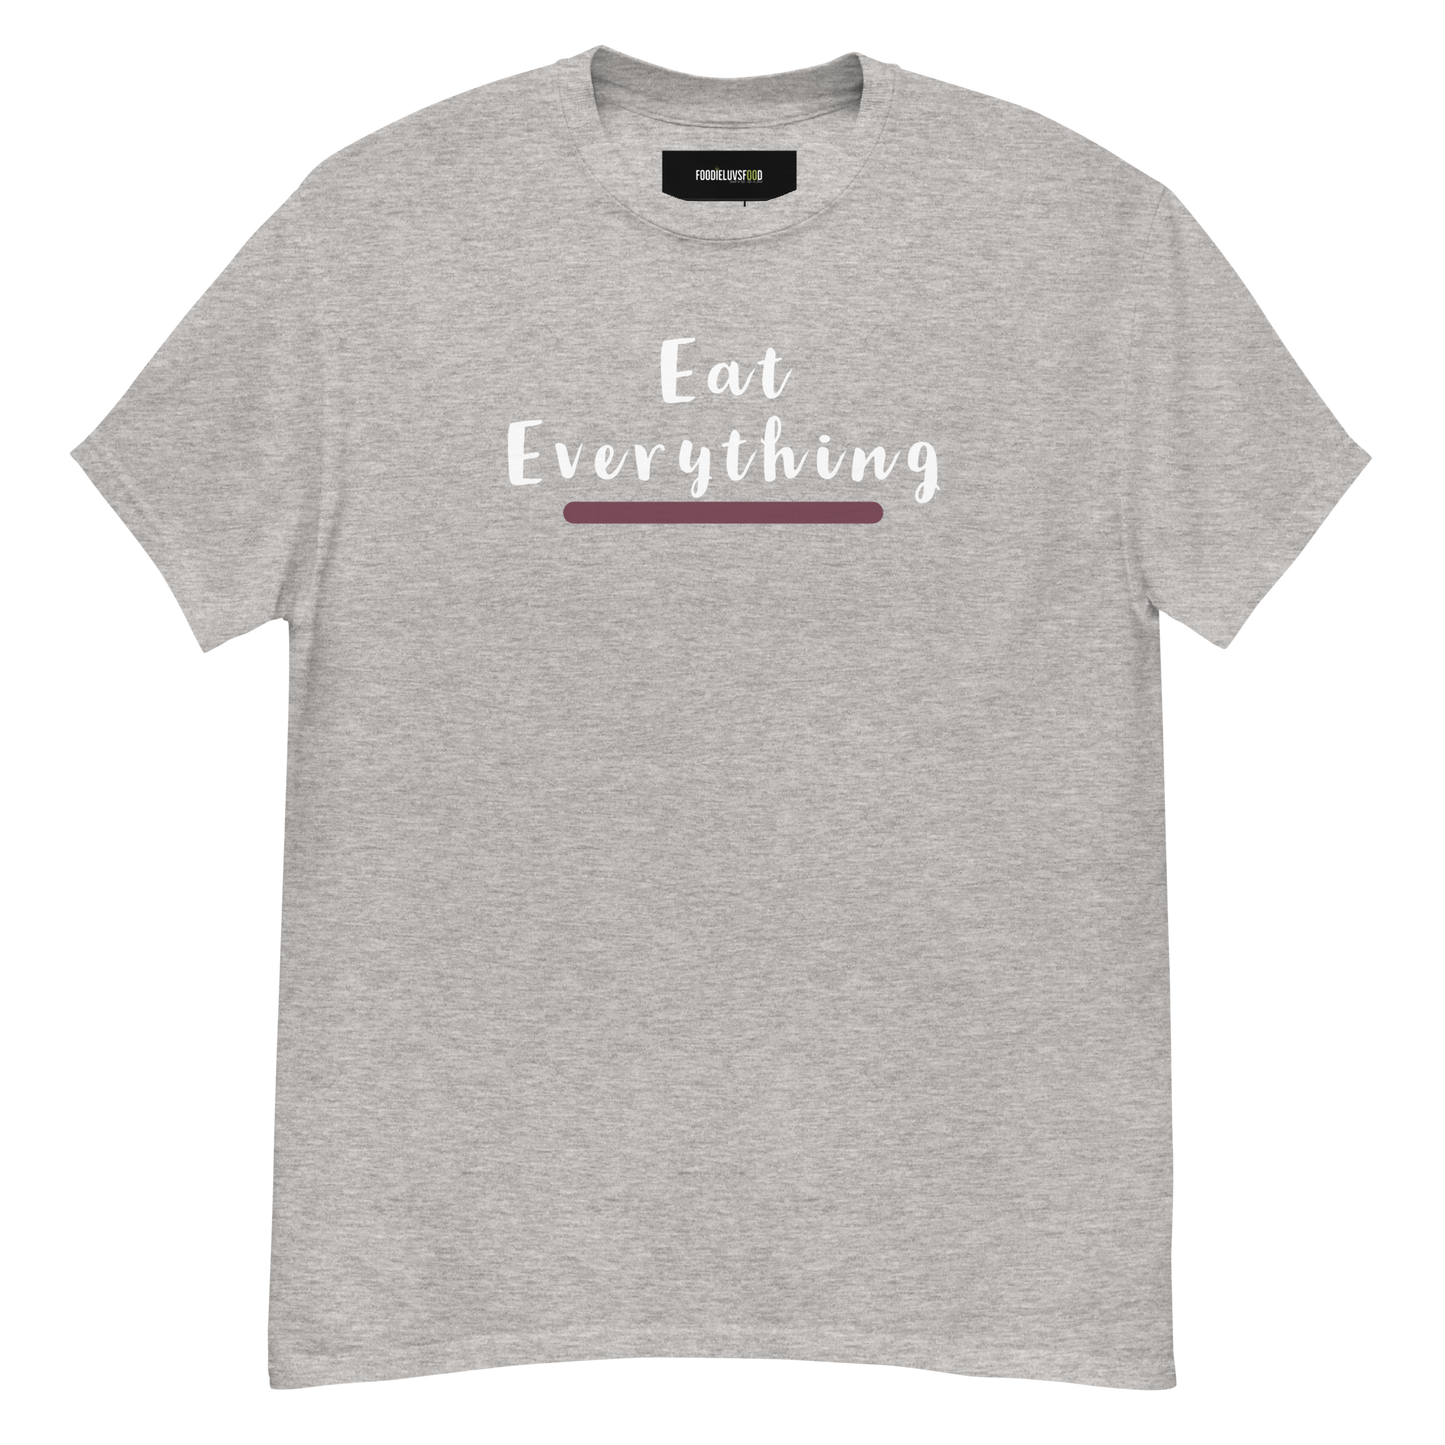 “Eat Everything” Unisex Classic T-Shirt